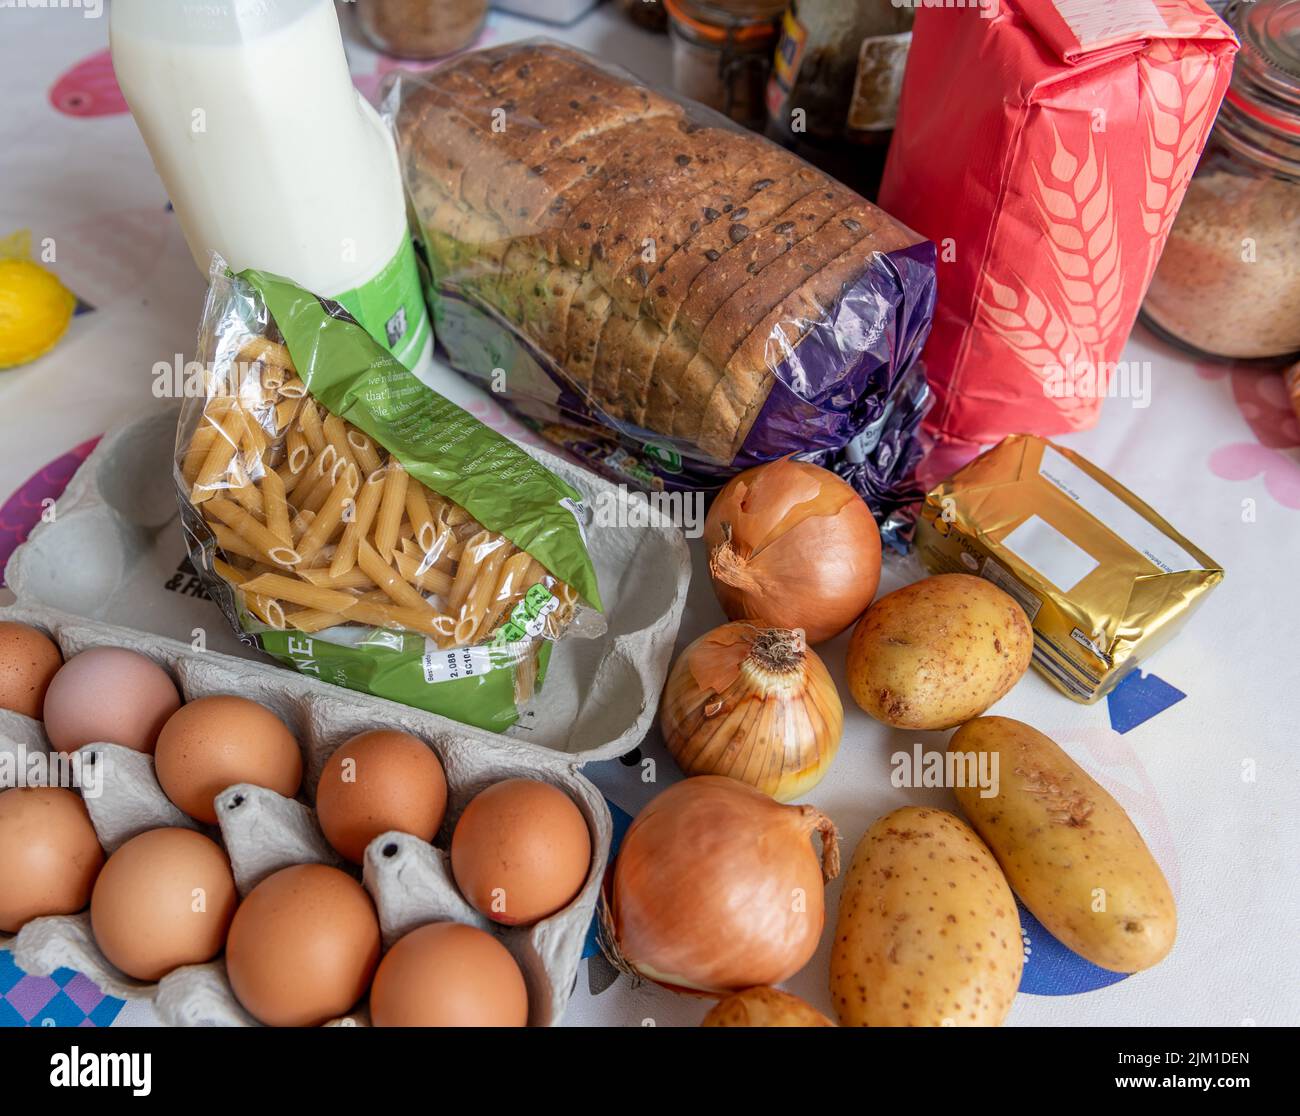 Einfache oder alltägliche Lebensmittel auf einem Küchentisch. Lebensmittelkosten, Inflation, Lebenshaltungskosten Konzept. Stockfoto